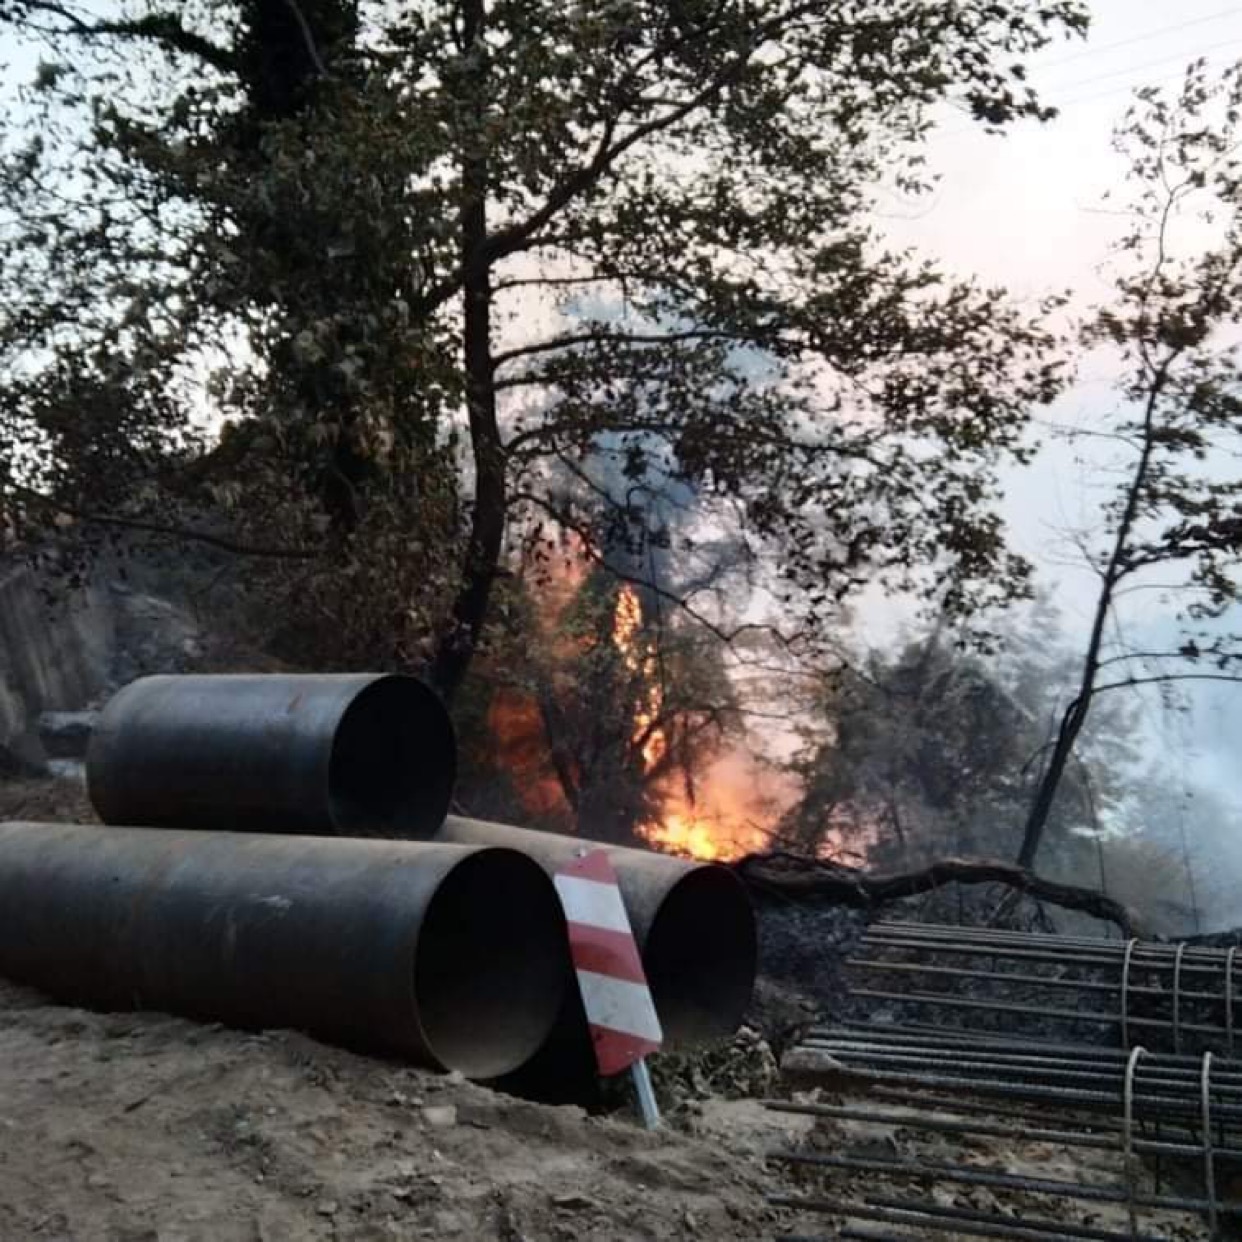 Σε επιφυλακή παραμένει η Πυροσβεστική μετά τη φωτιά στο Πουρί  (φωτογραφίες)